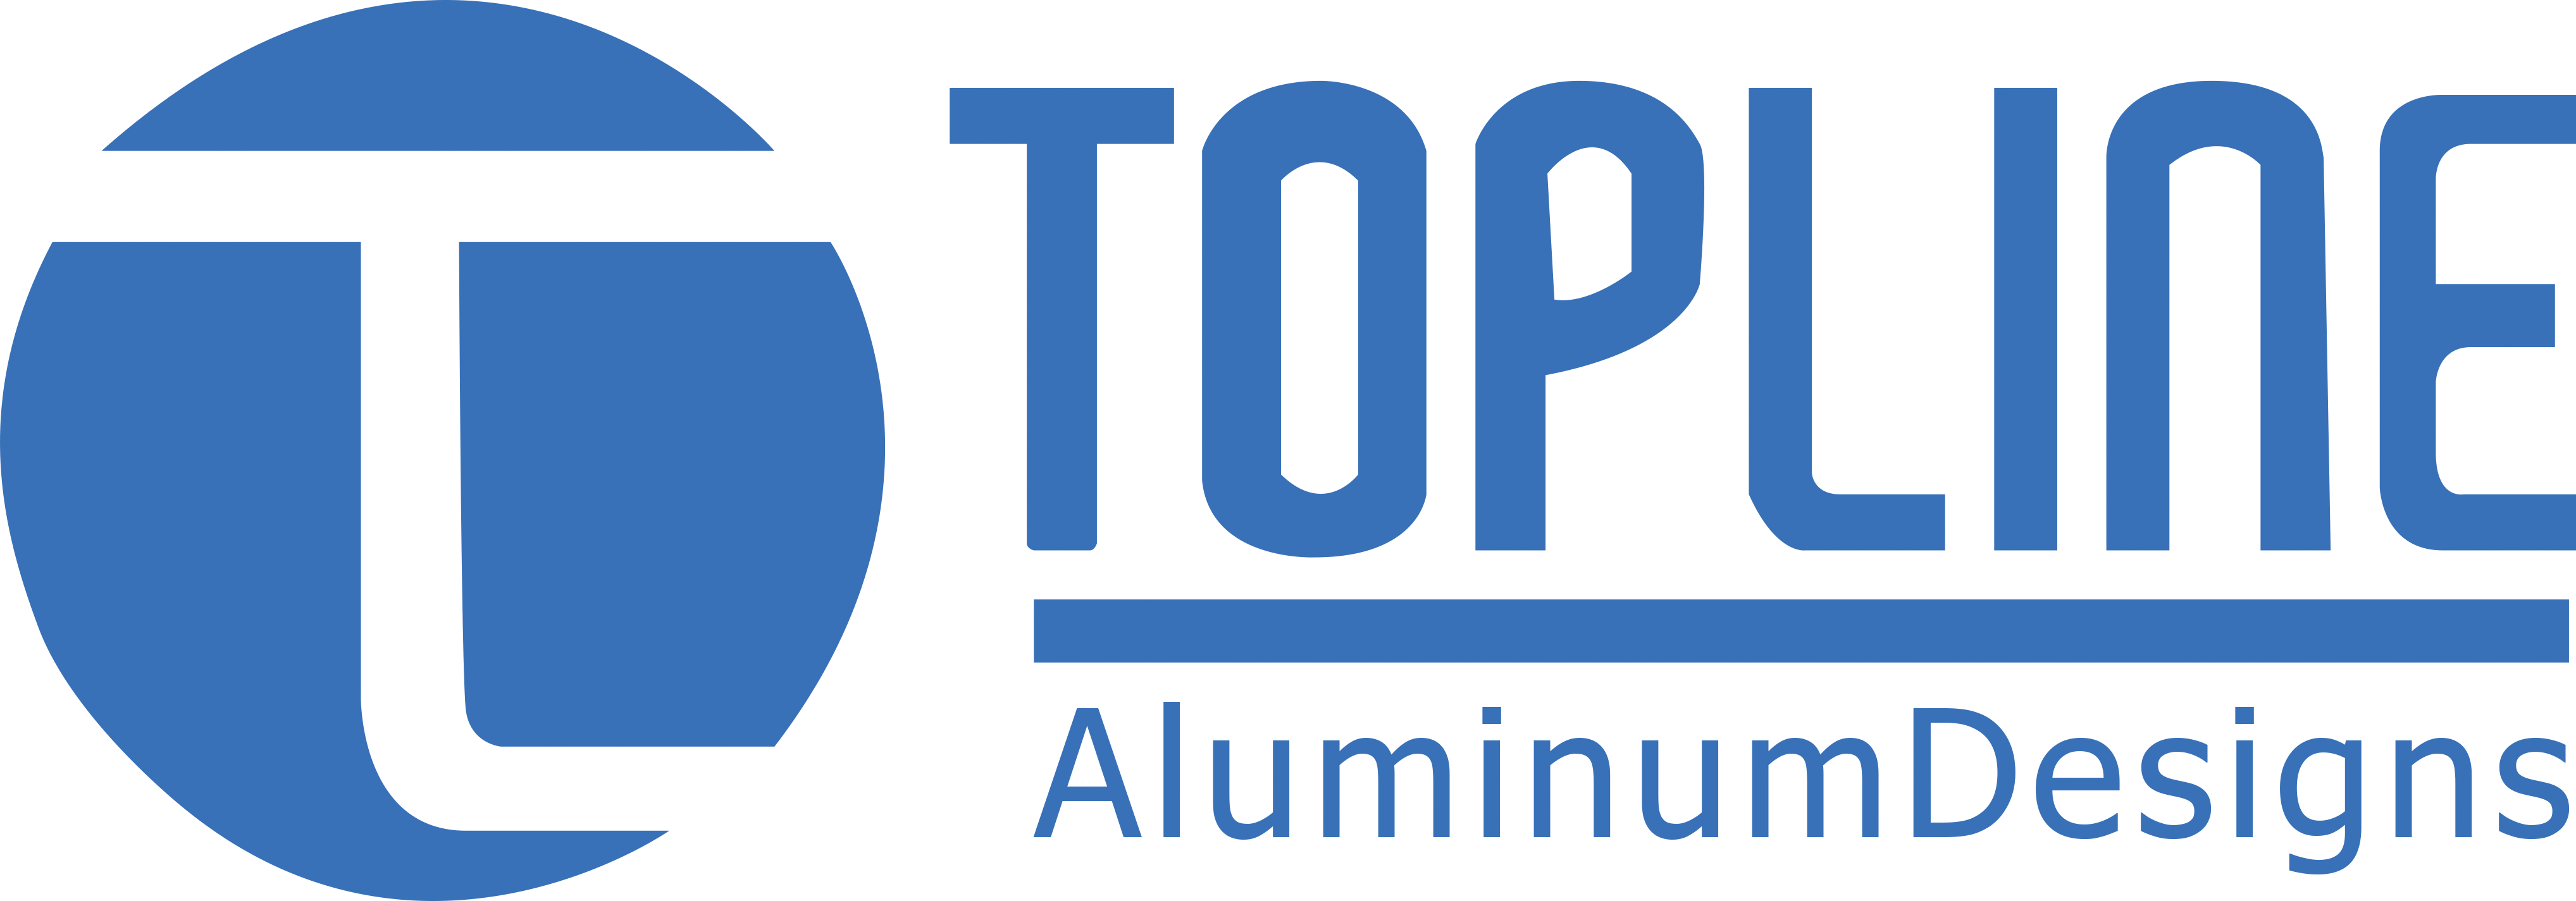 Top Line Aluminum